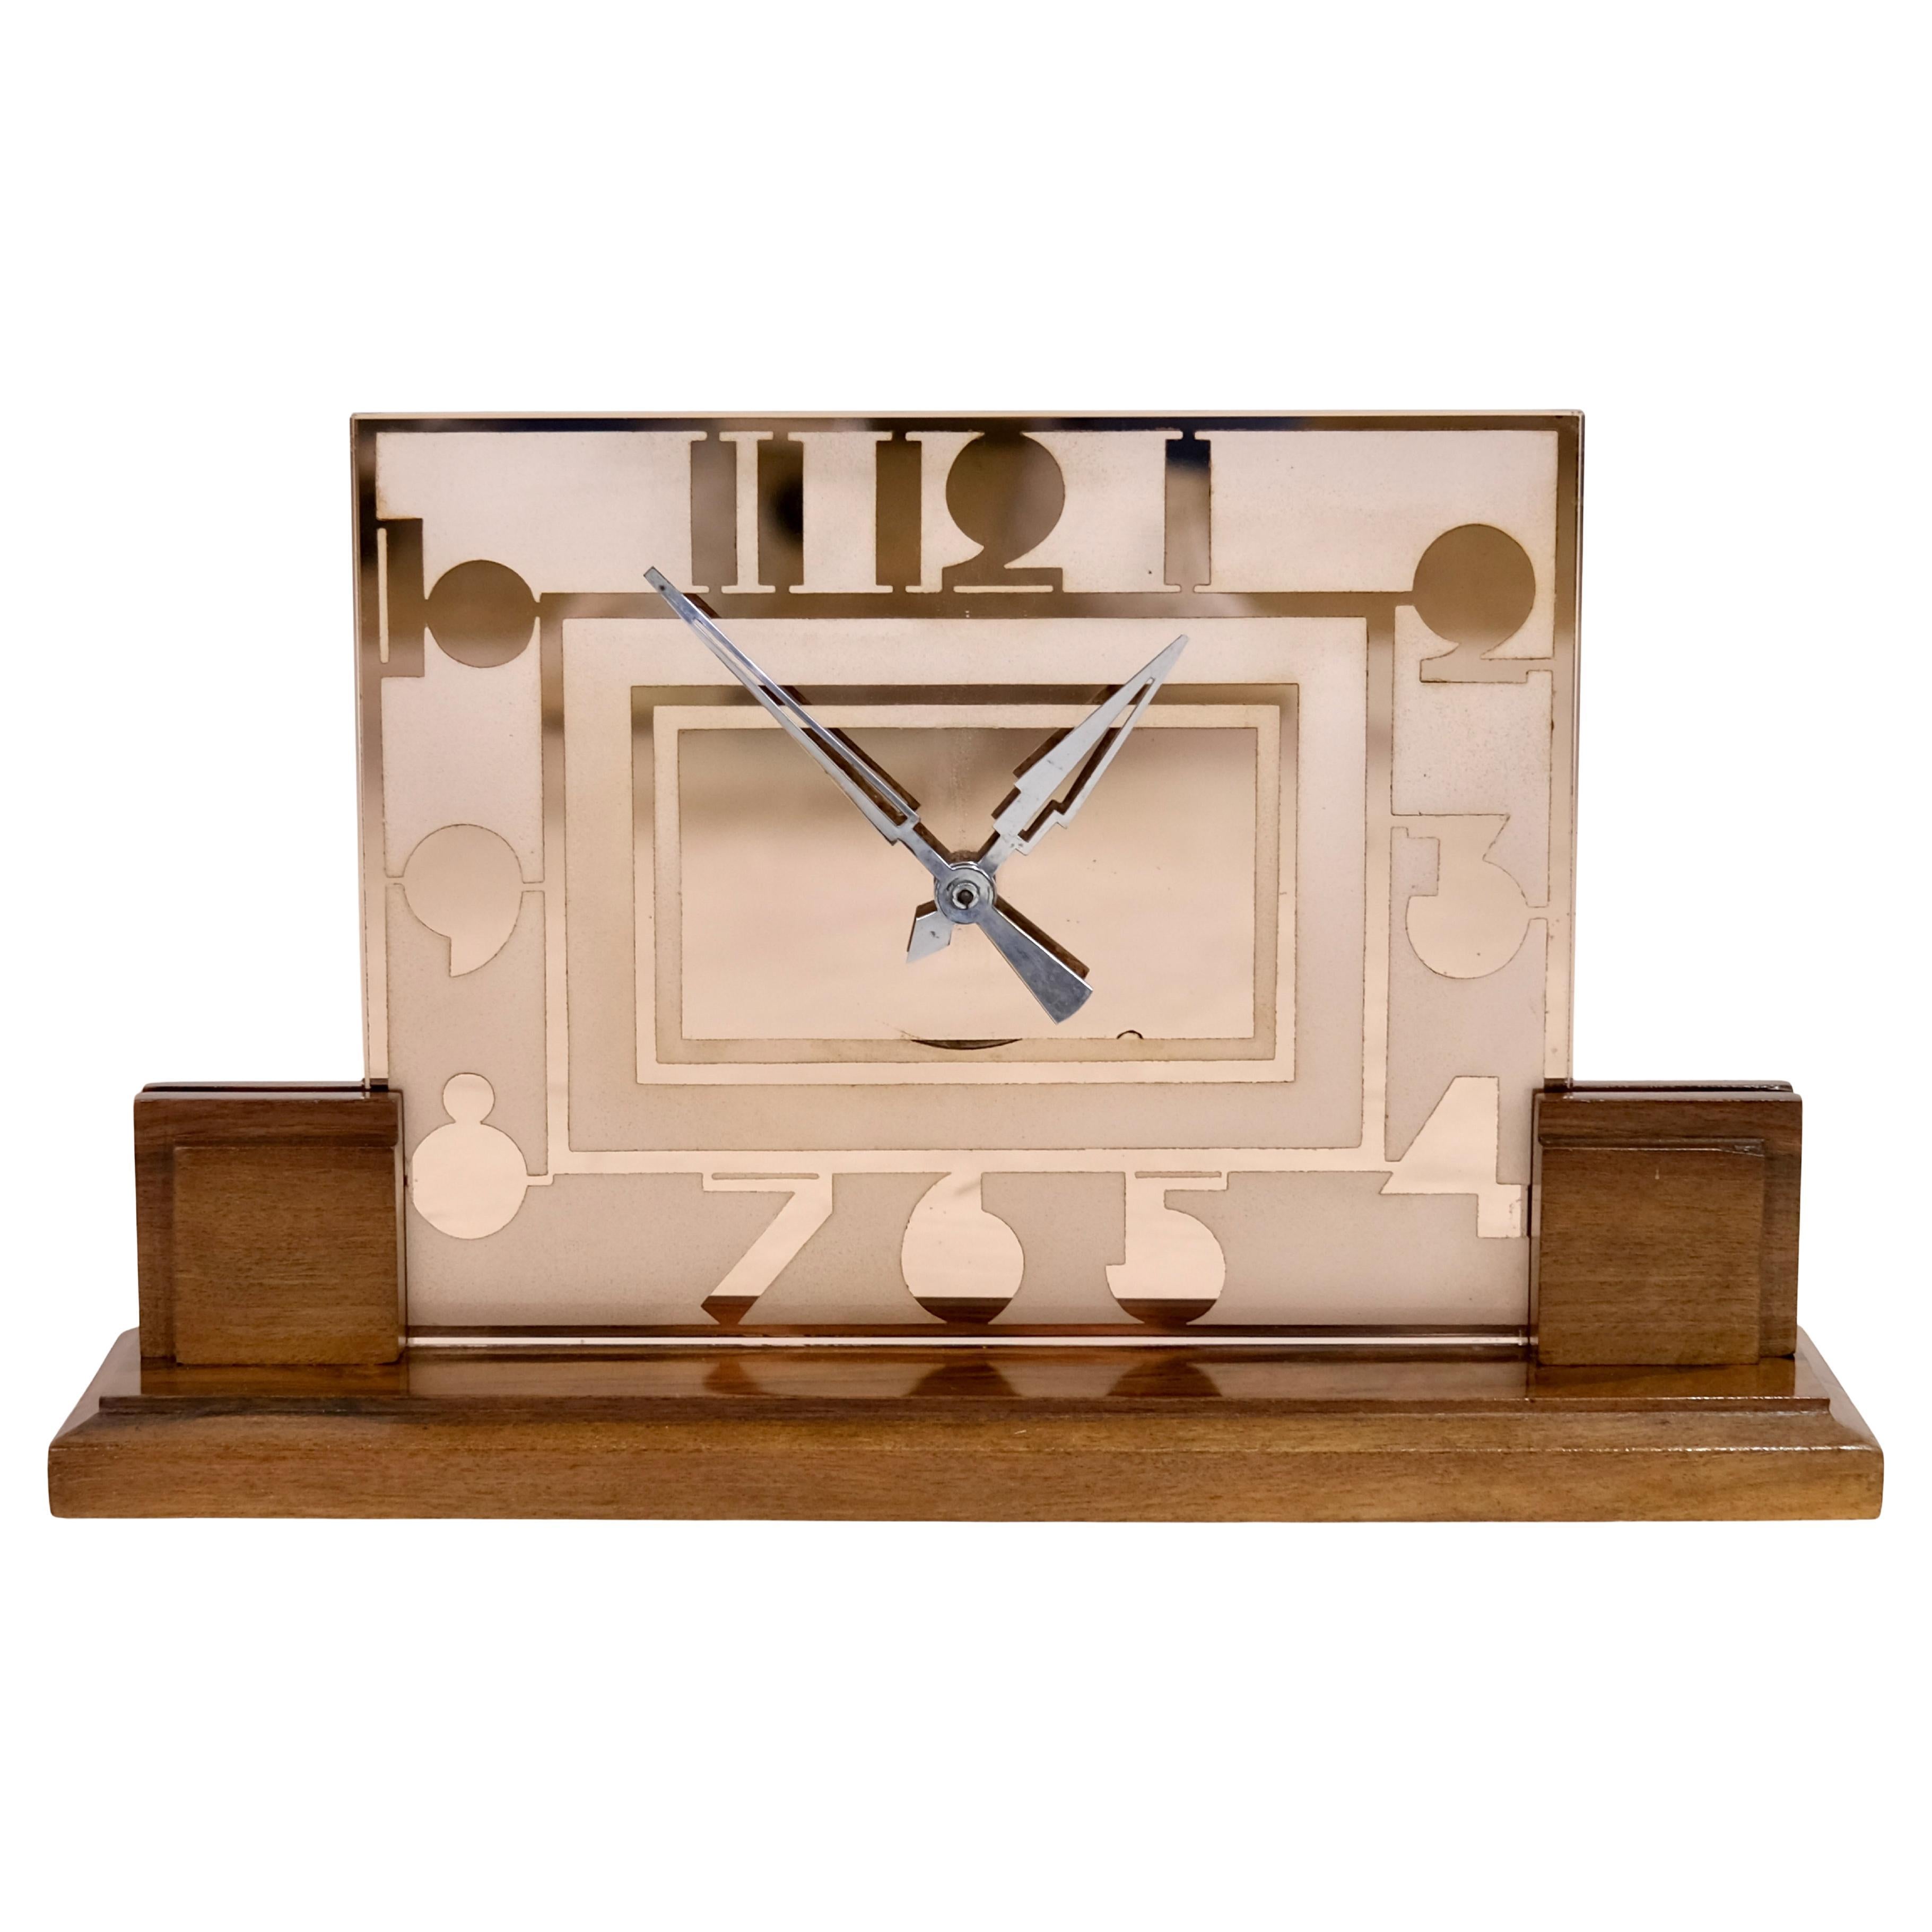 Horloge de table Art déco des années 1930 avec chiffres typiques en verre Rosaline et art déco